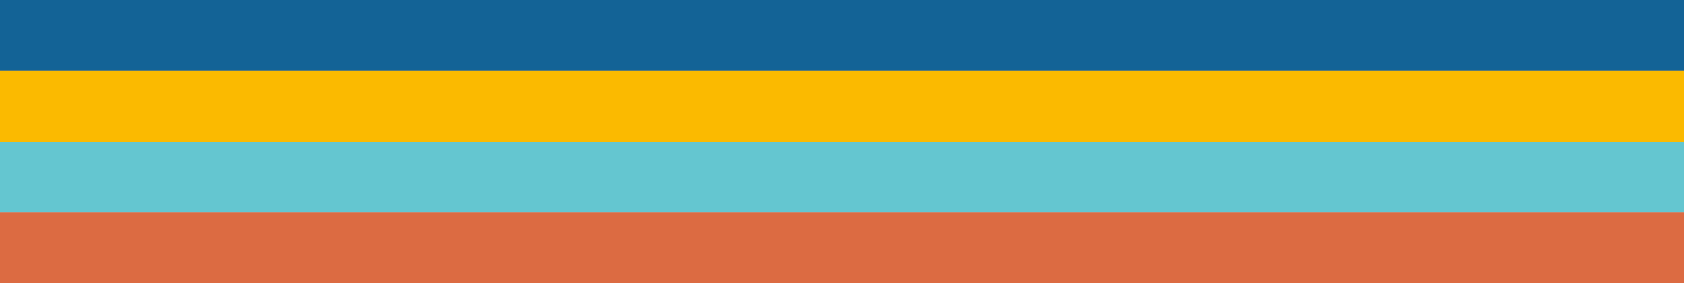 Bunte Farbstreifen (blau-gelb-hellblau-rot) die farbenfrohen Unternehmensfarben der Bitamigos.